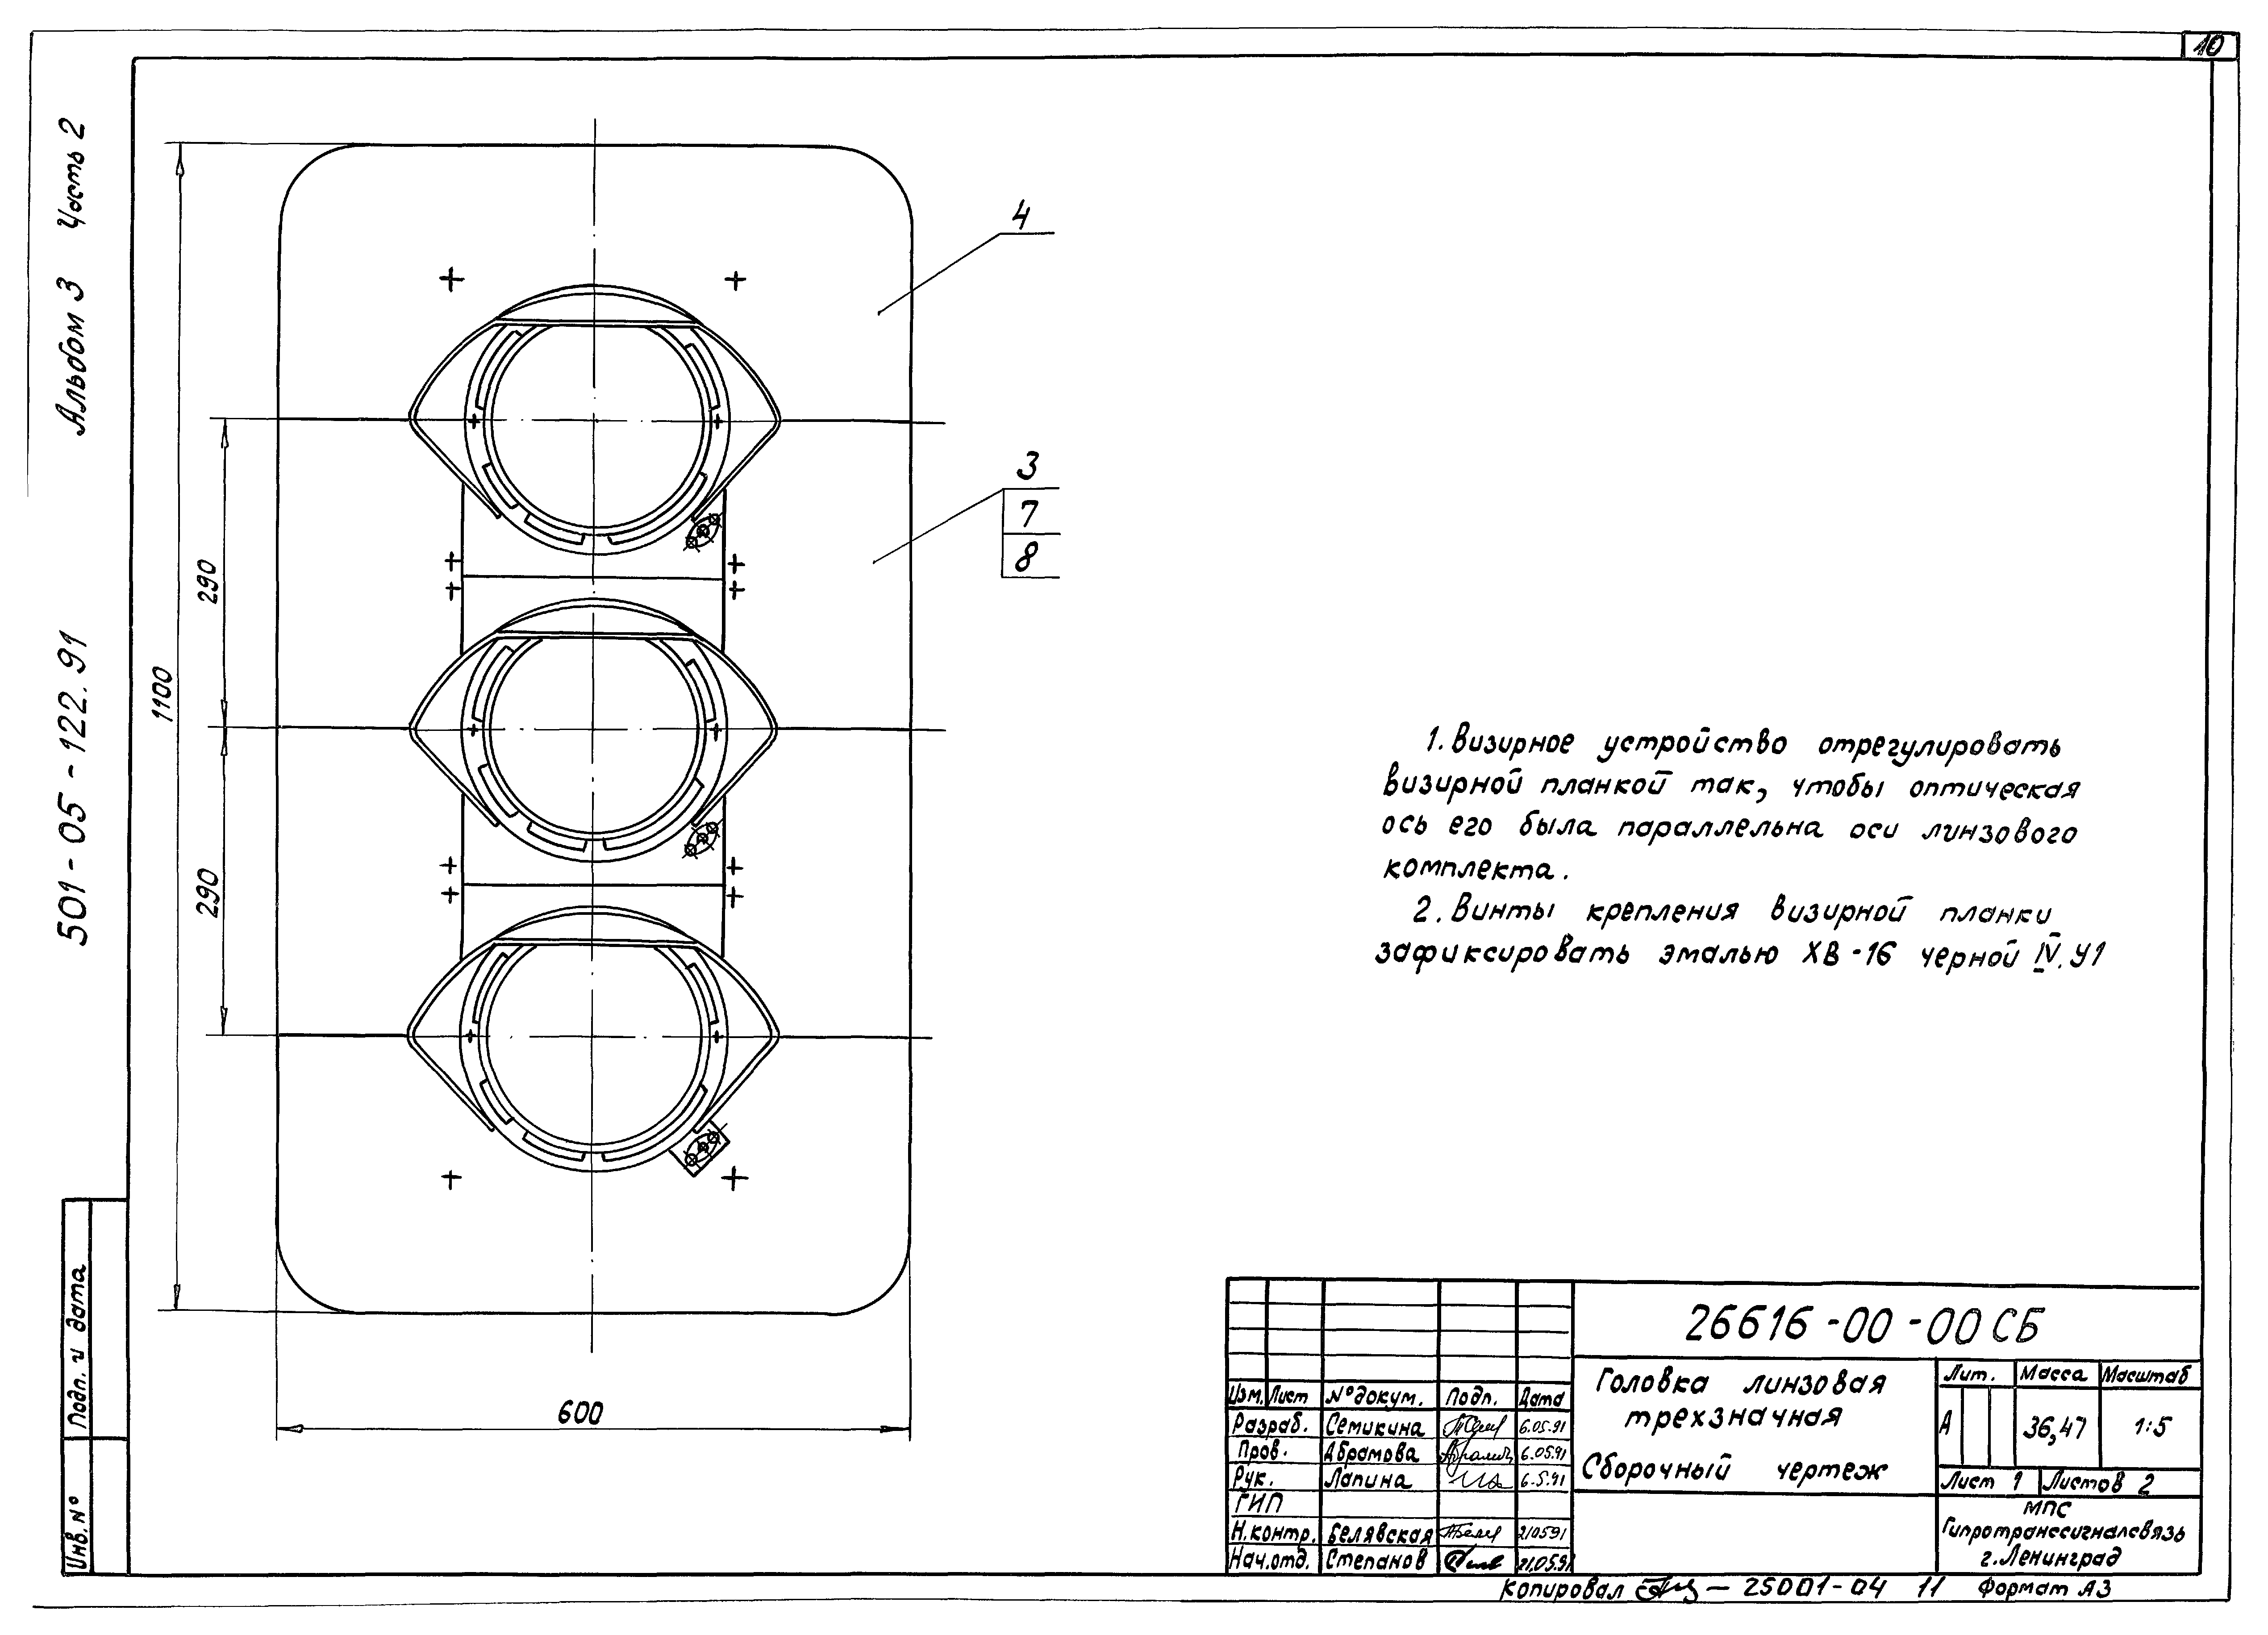 Типовые материалы для проектирования 501-05-122.91